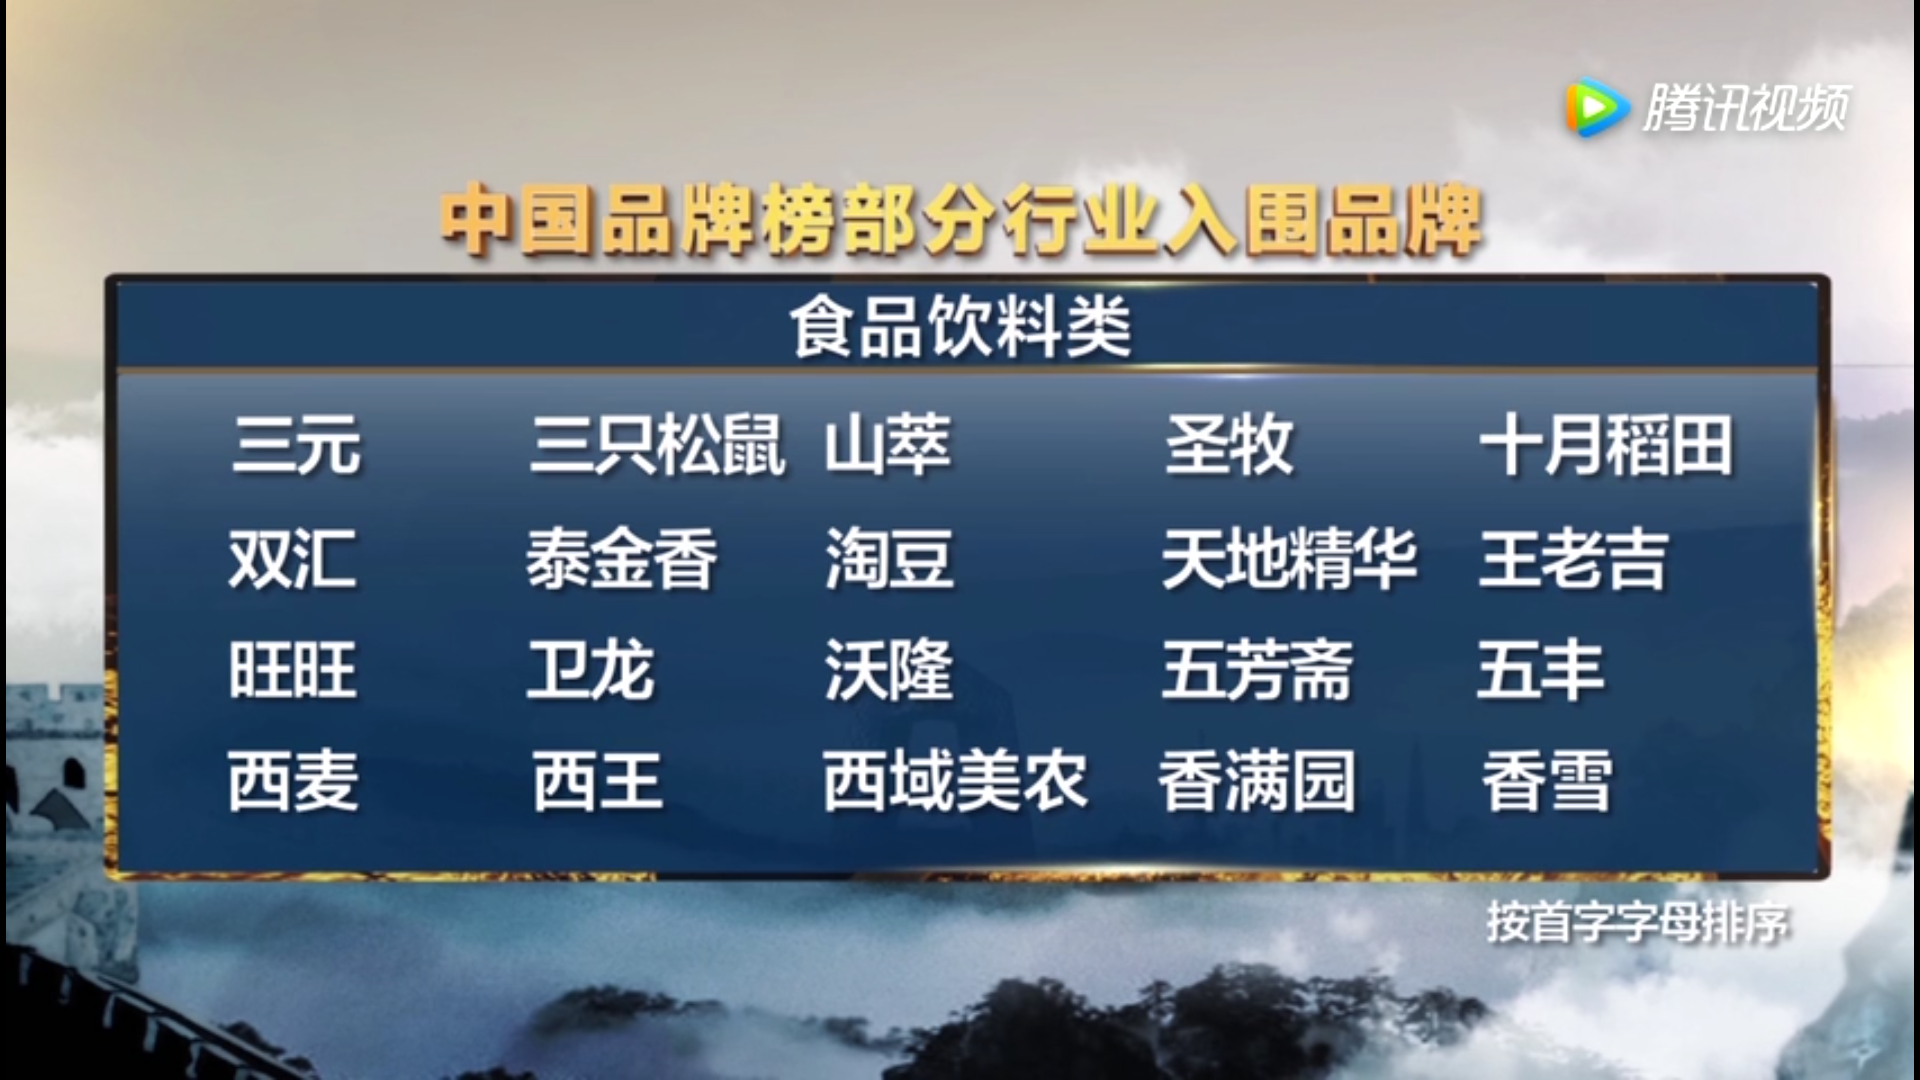 天地精华成为“CCTV中国品牌榜”首批入围品牌